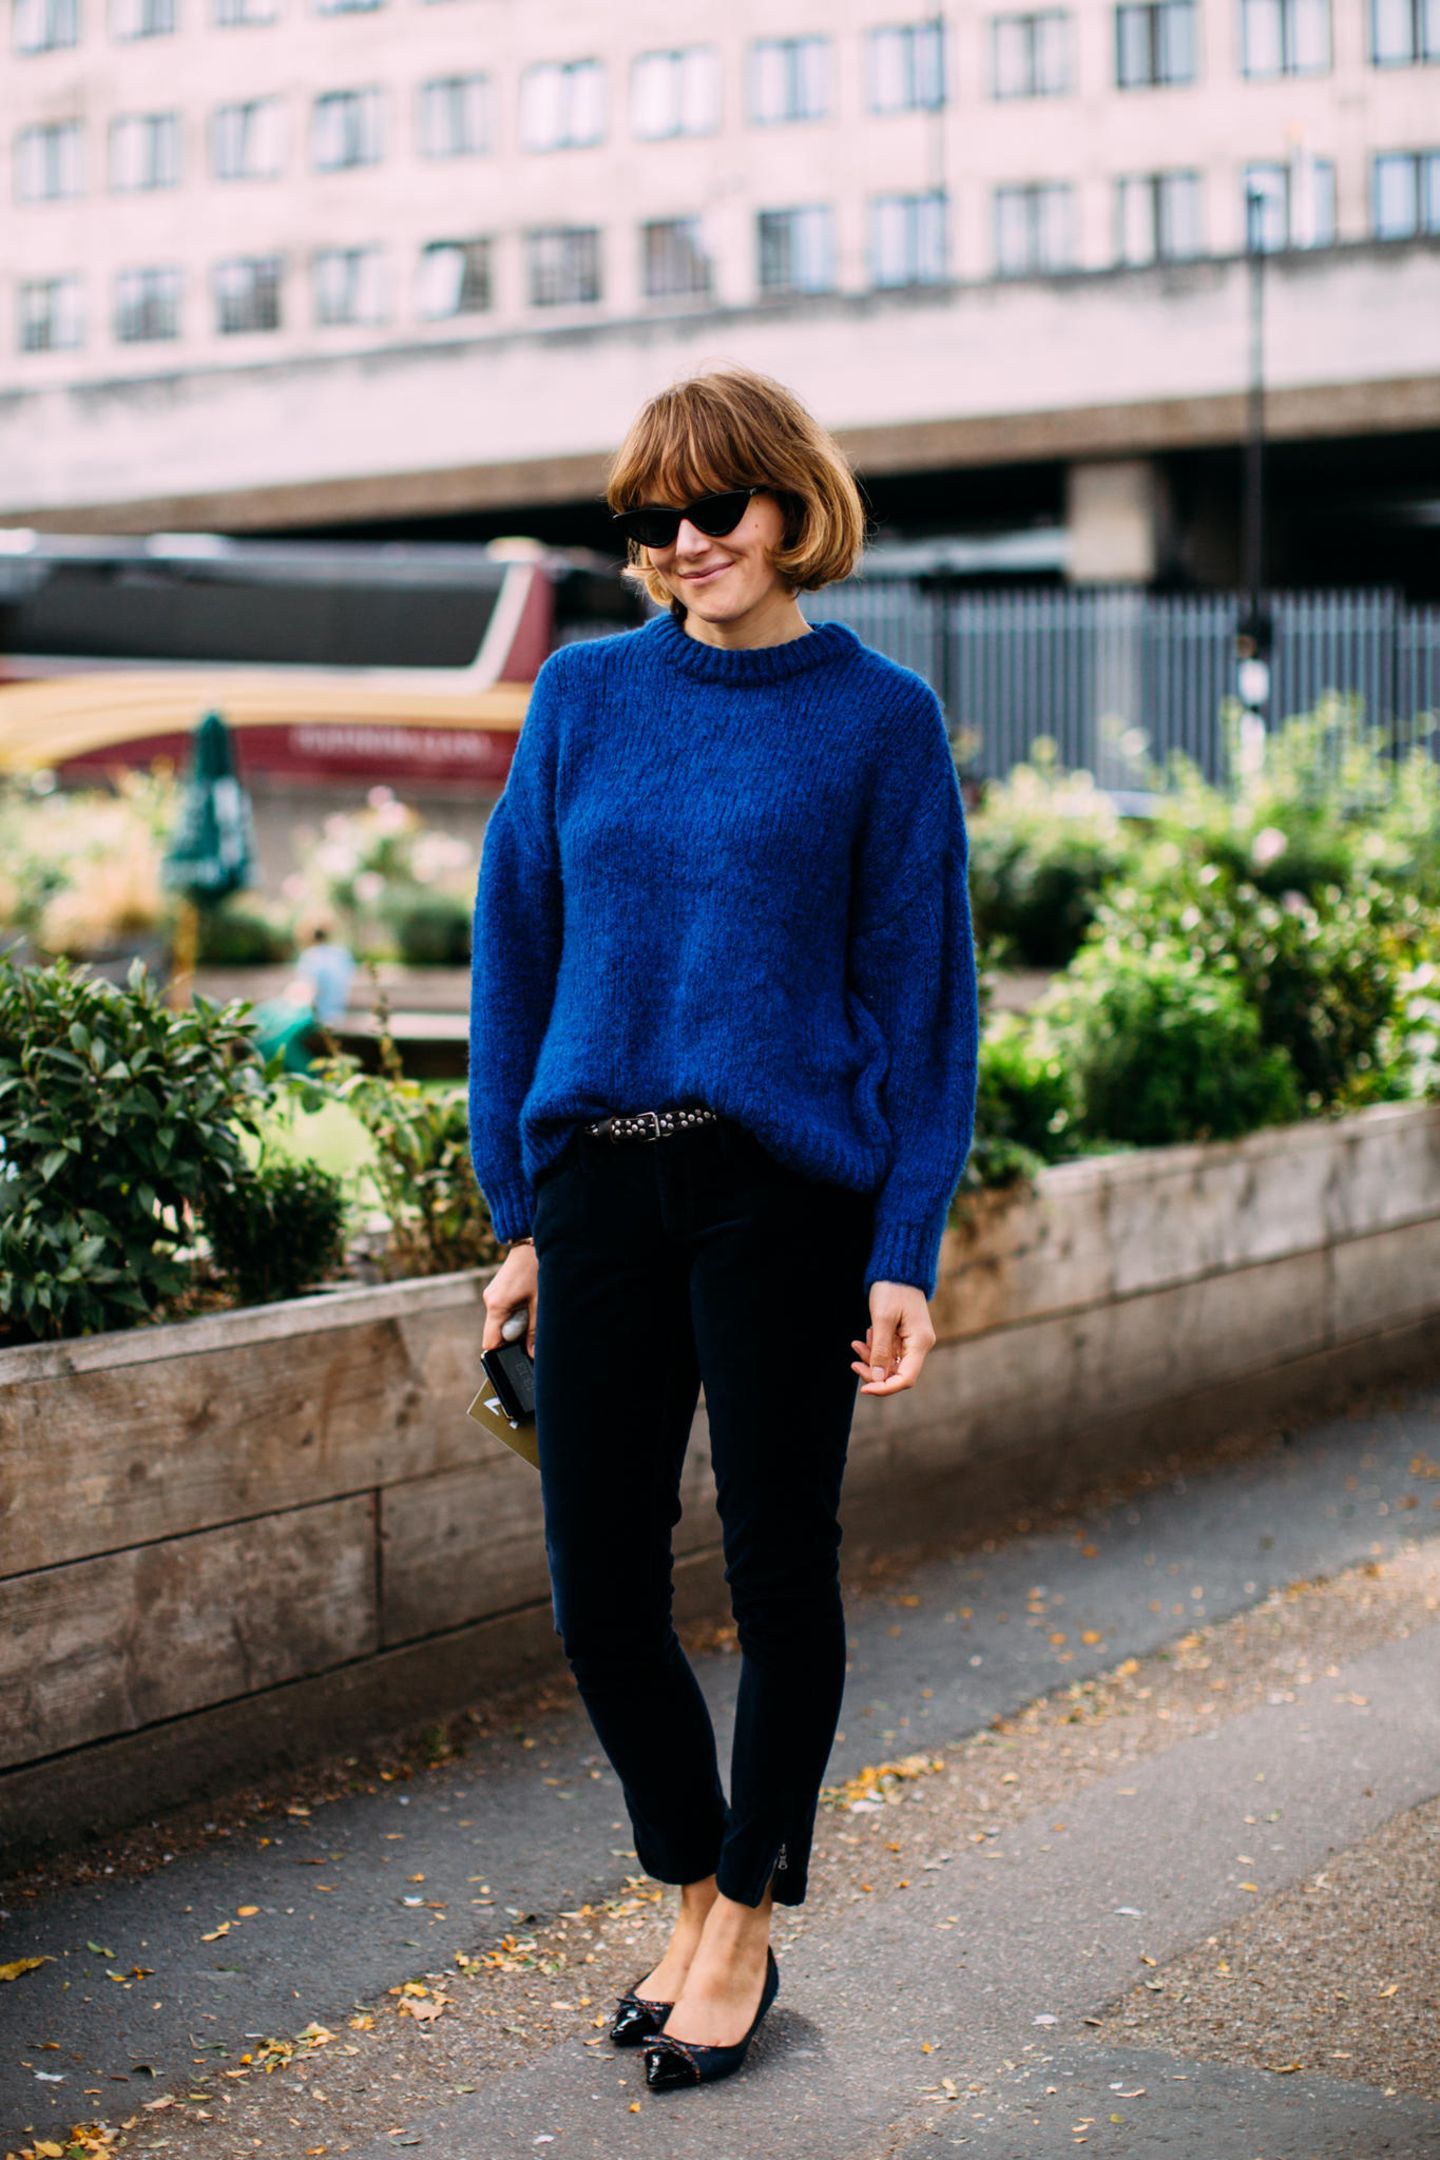 Outfits, die wir zur Arbeit anziehen: Frau mit blauem Pullover und schwarzer Hose